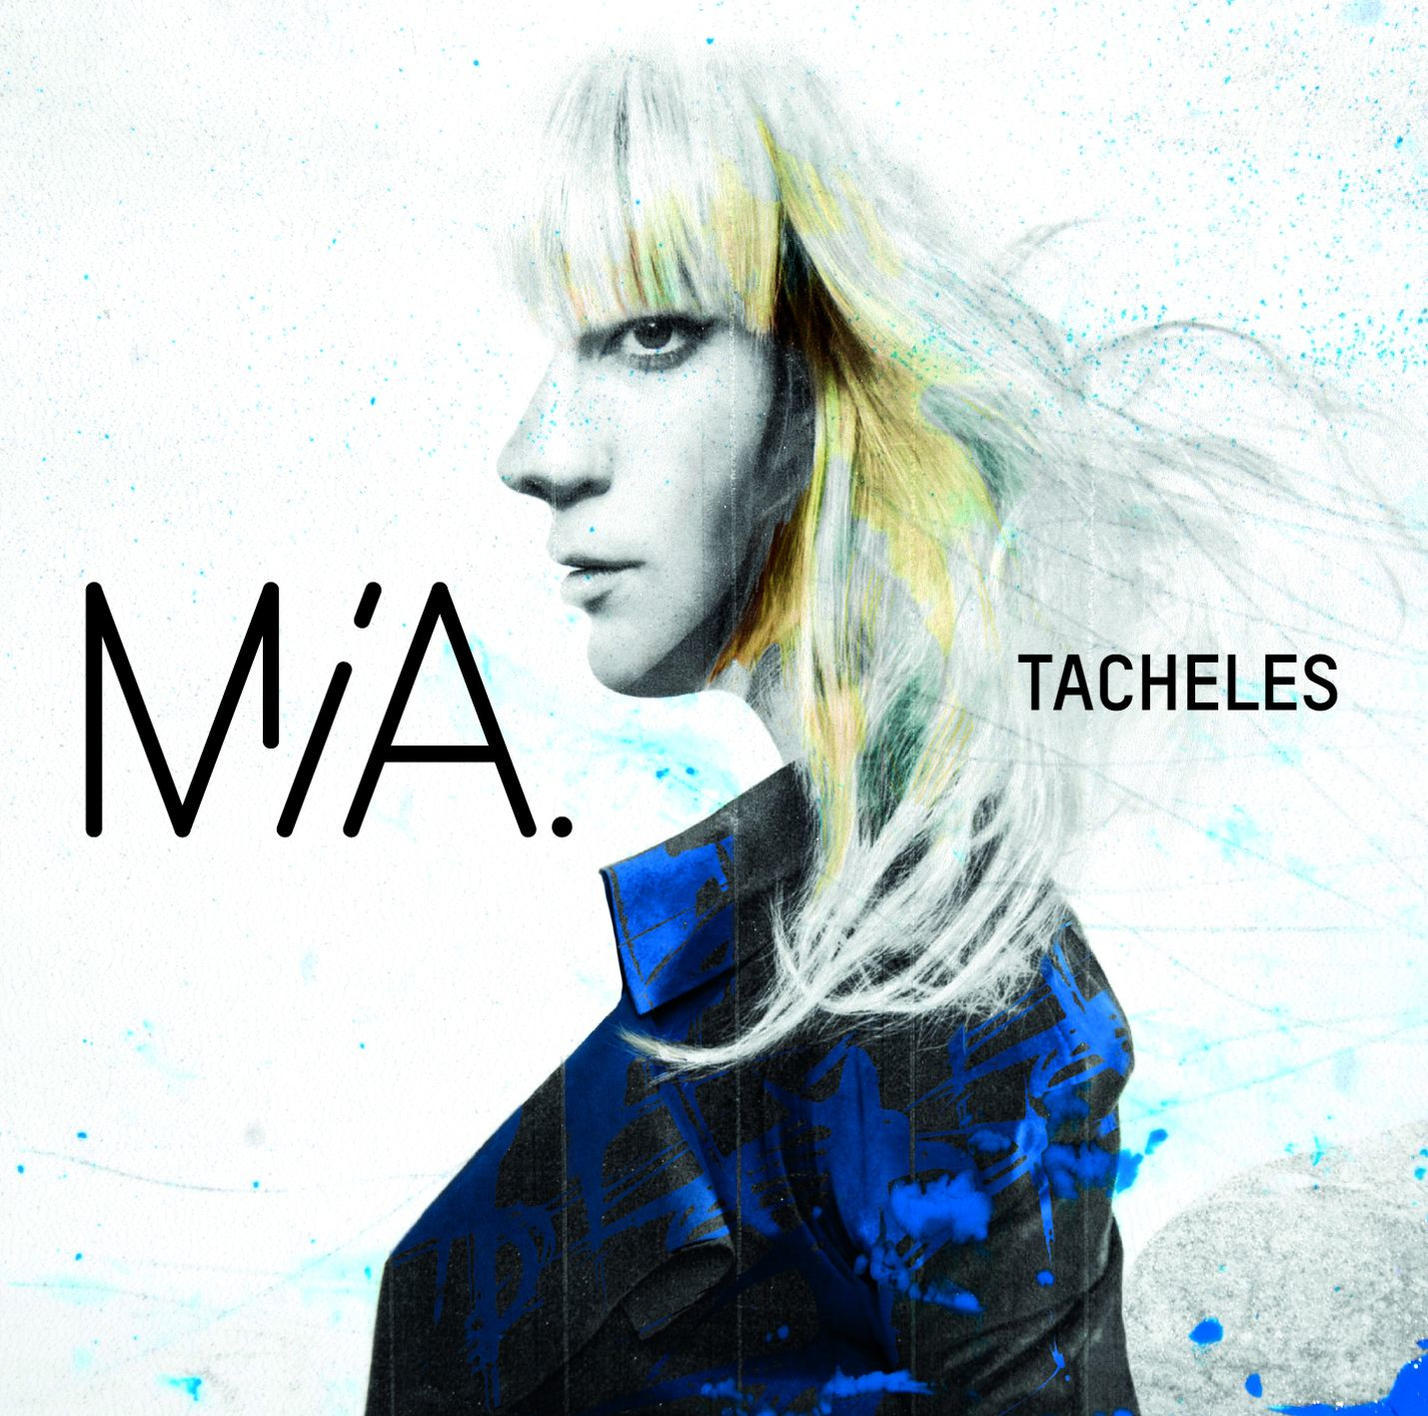 Tacheles (Ltd.Coloured - (Vinyl) - MIA. Vinyl)